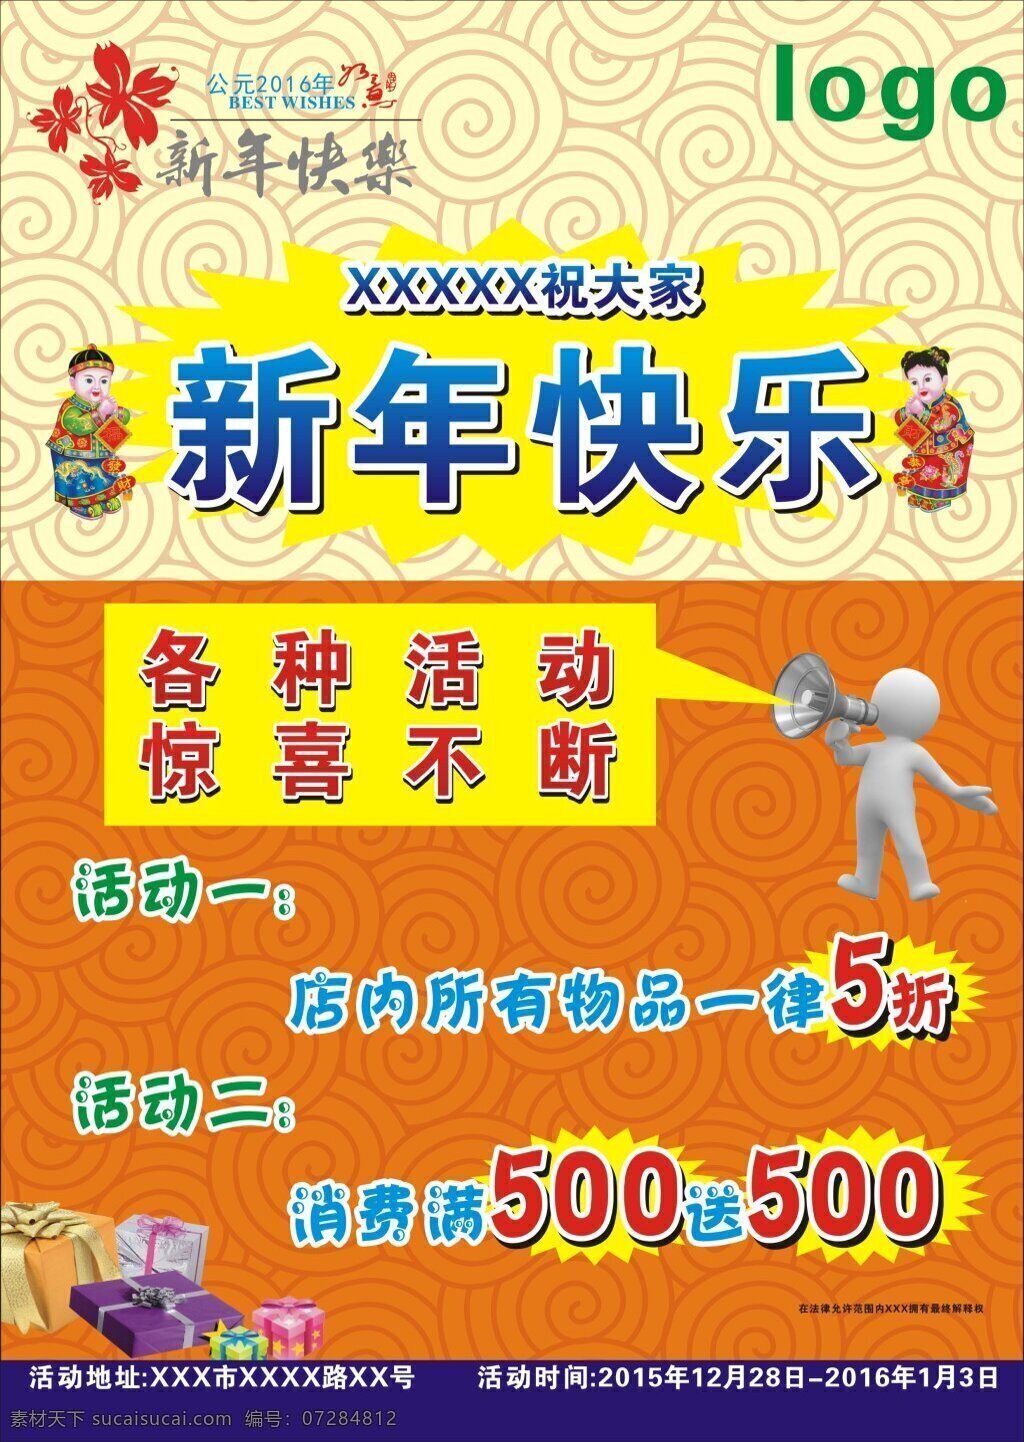 新年快乐 商场海报 促销海报 礼物 3d 喇叭 小人 橙色